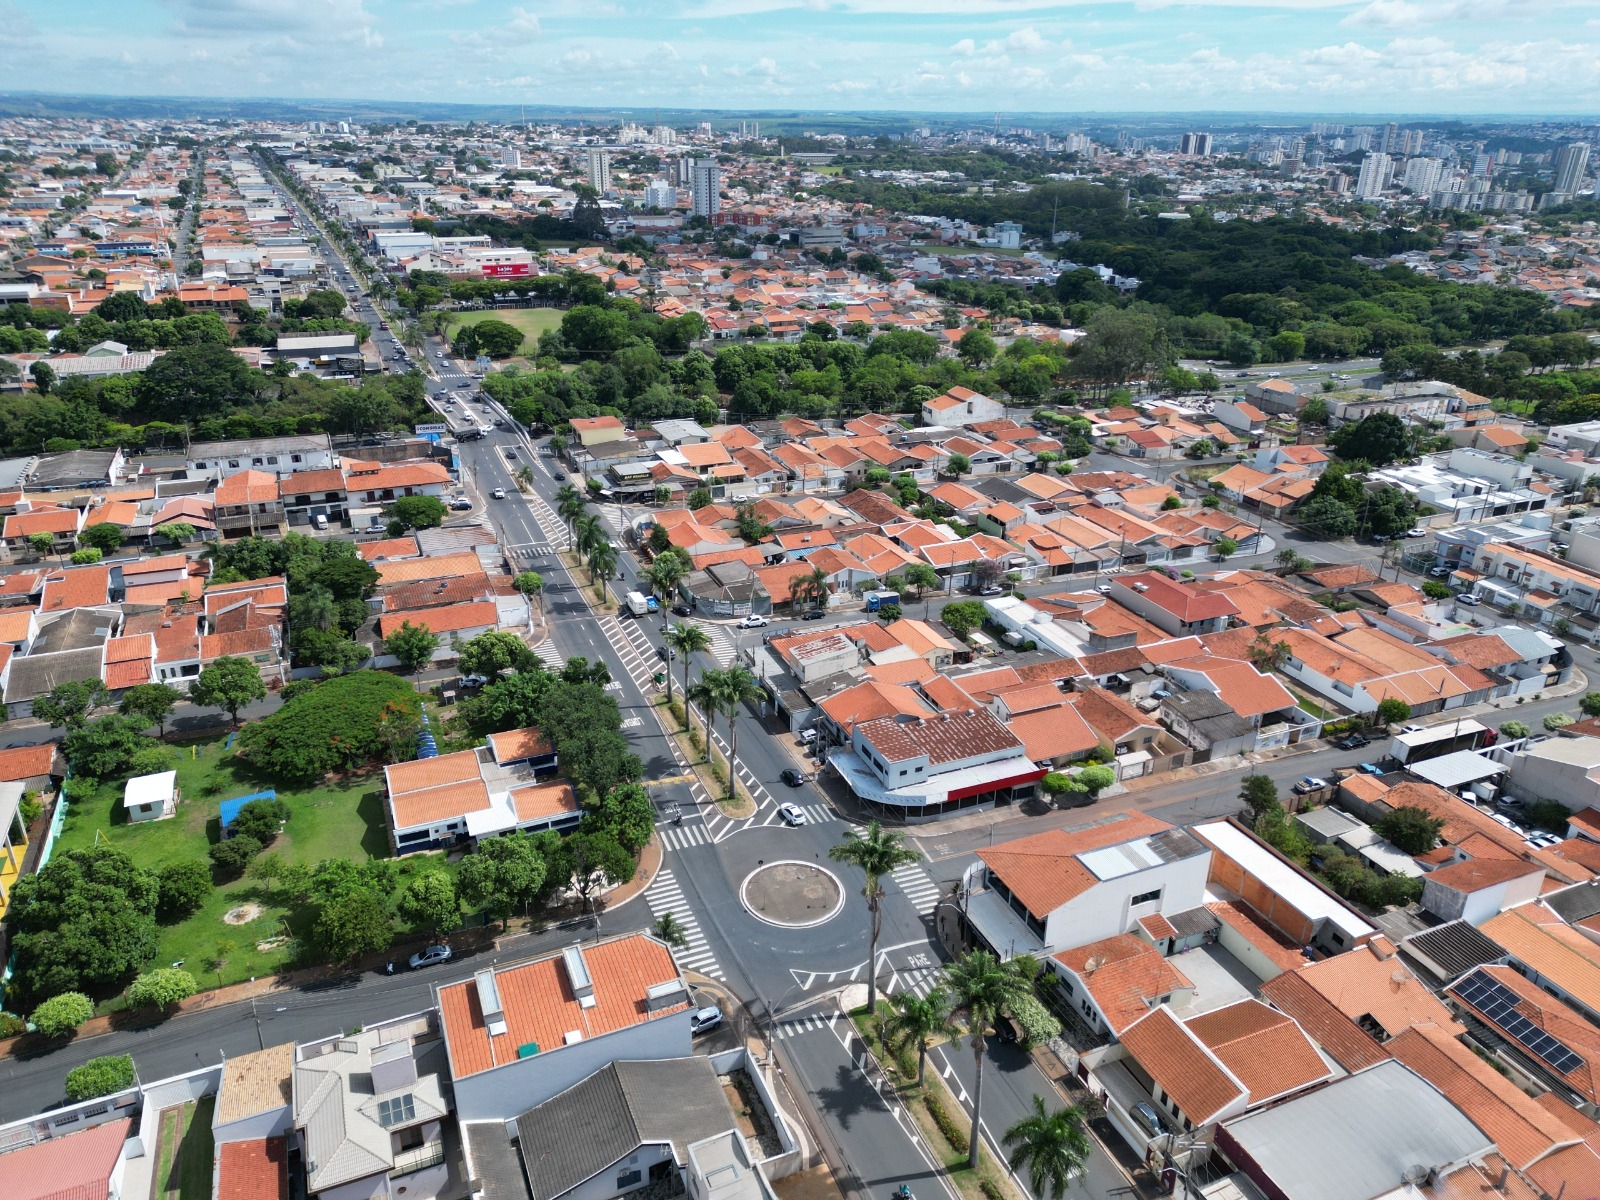 Melhorias no Trânsito - A Evolução Urbana na Região de Iacanga